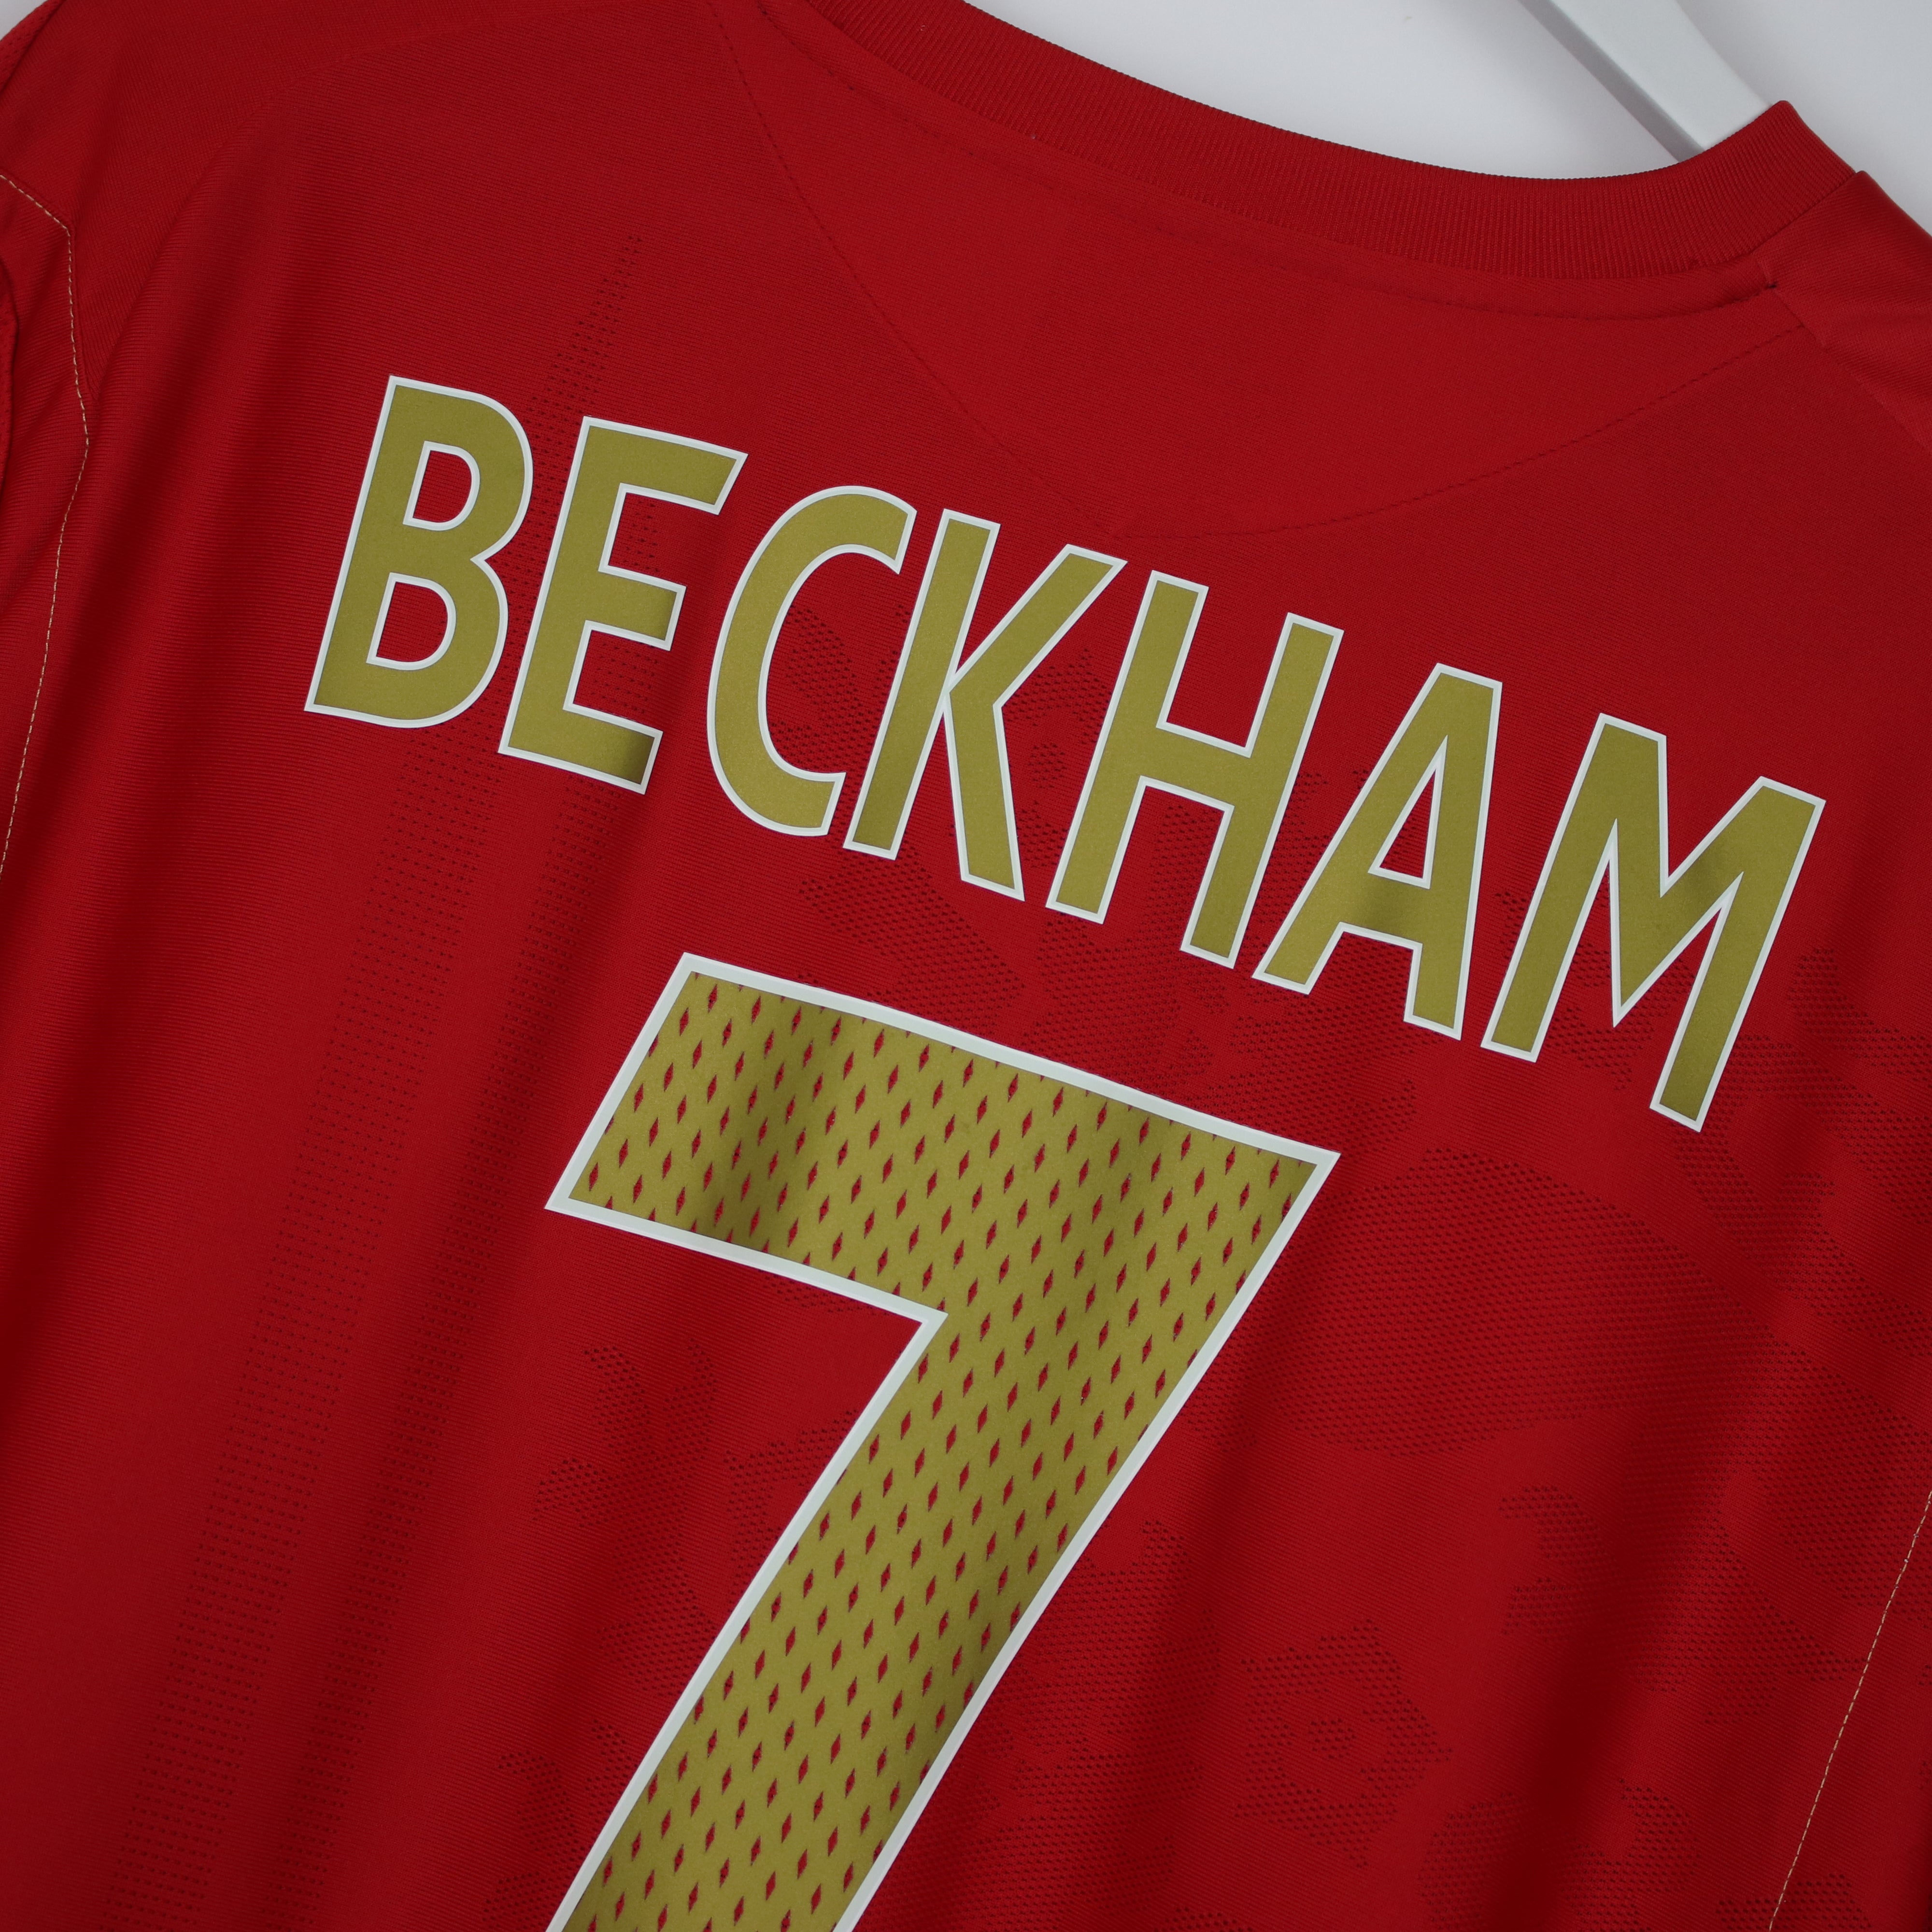 Buy 2006-08 England Away Shirt #7 Beckham (Excellent) - XL - Retro